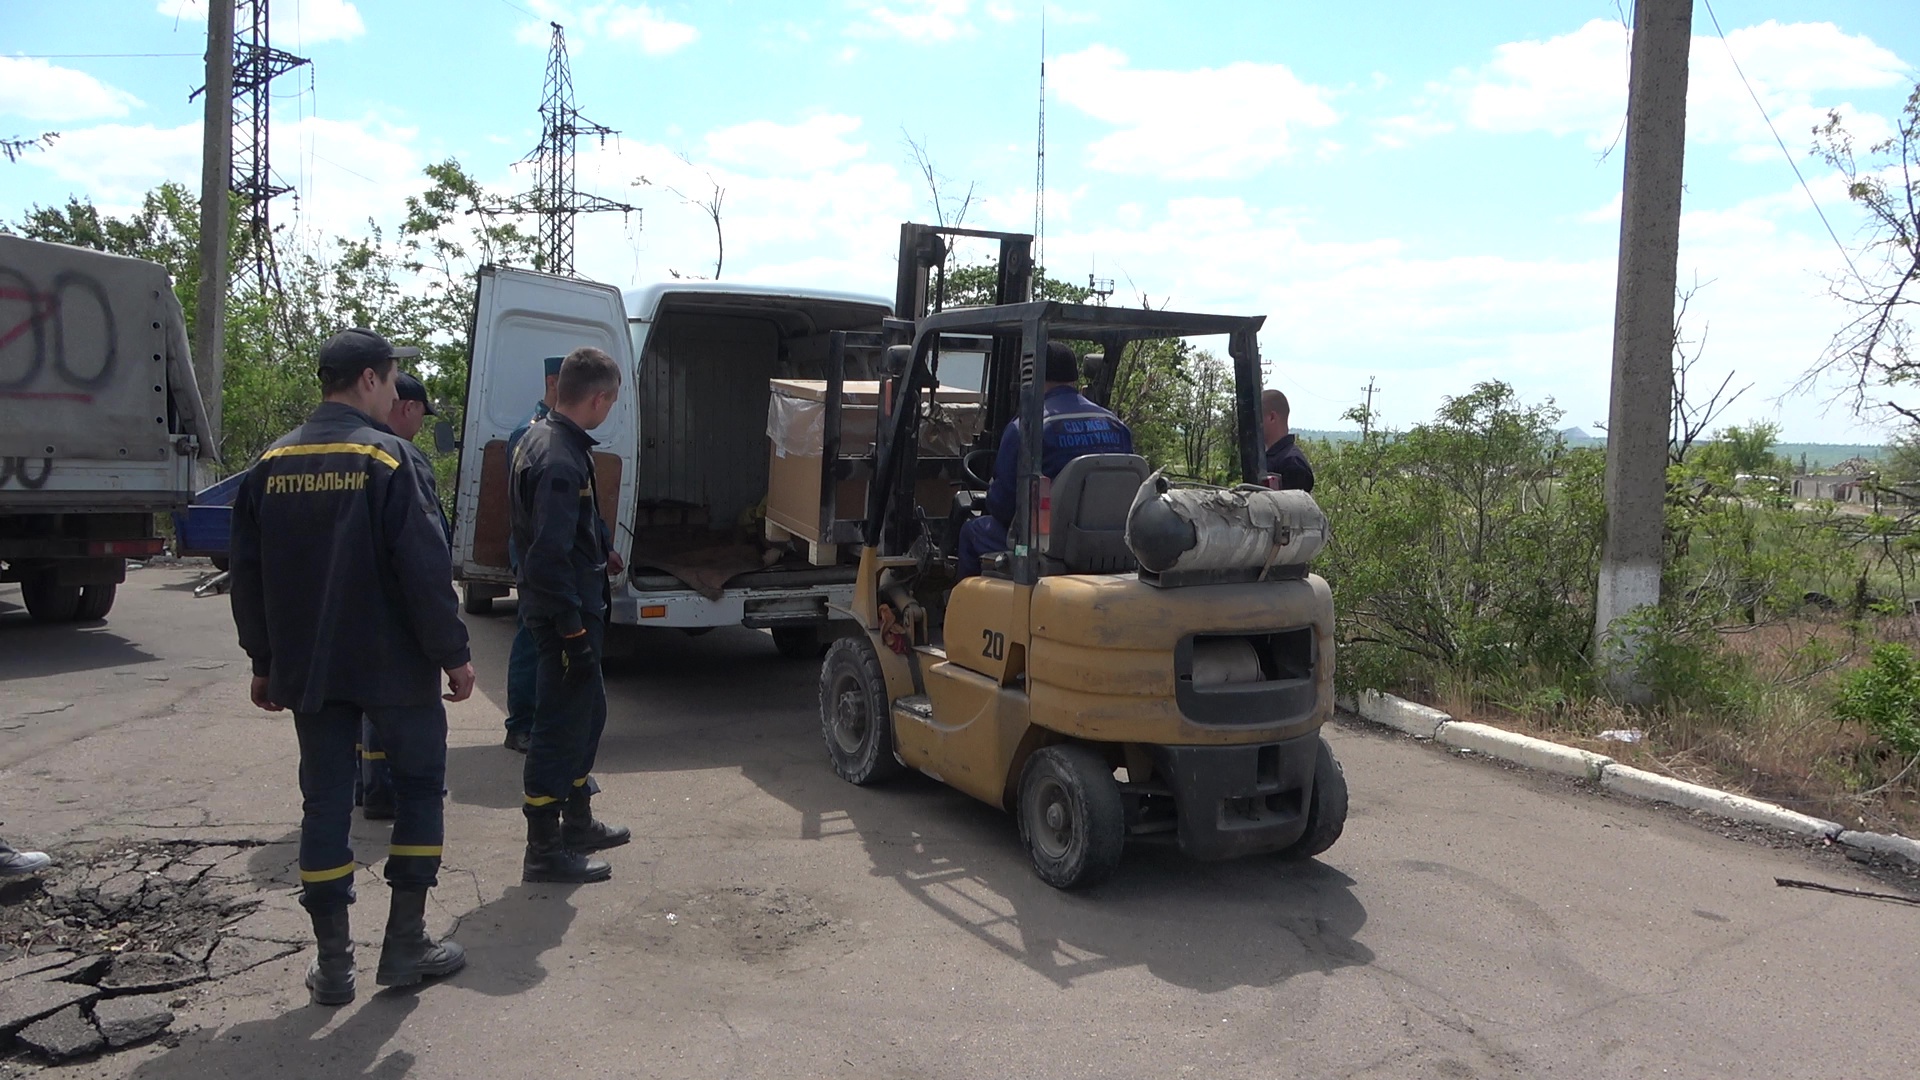 Как сообщили порталу "Луганск онлайн" в пресс-службе Министерства чрезвычайных ситуаций и ликвидации последствий стихийных бедствий Луганской Народной Республики, сотрудники МЧС ЛНР доставили гуманитарную помощь в Рубежное.